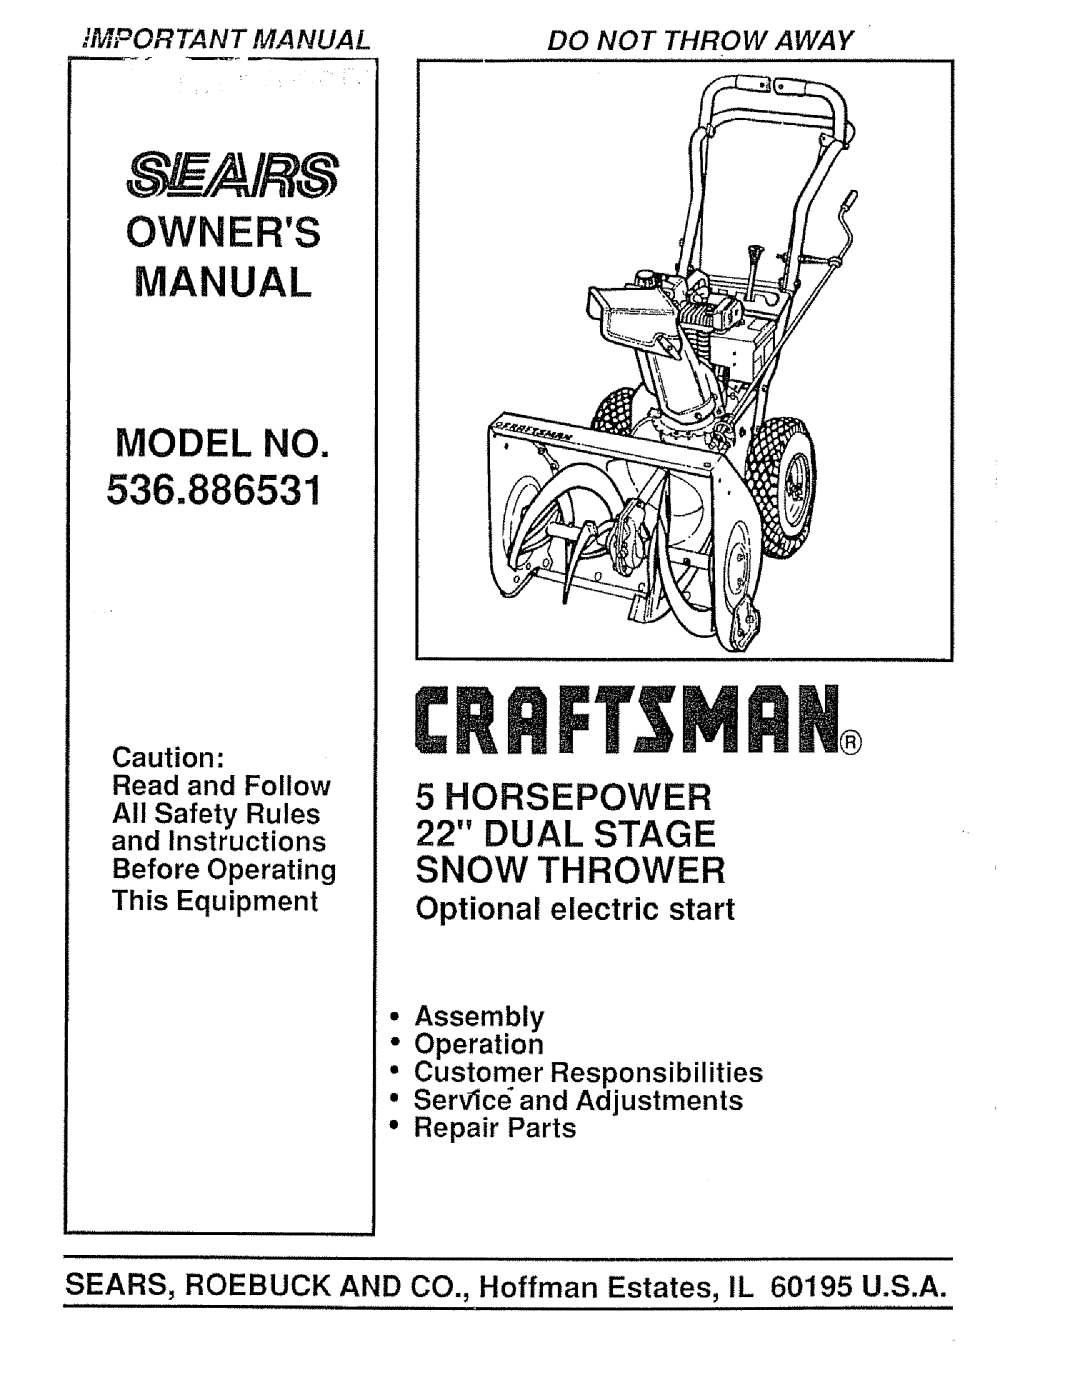 Sears 536.886531 owner manual Manual 